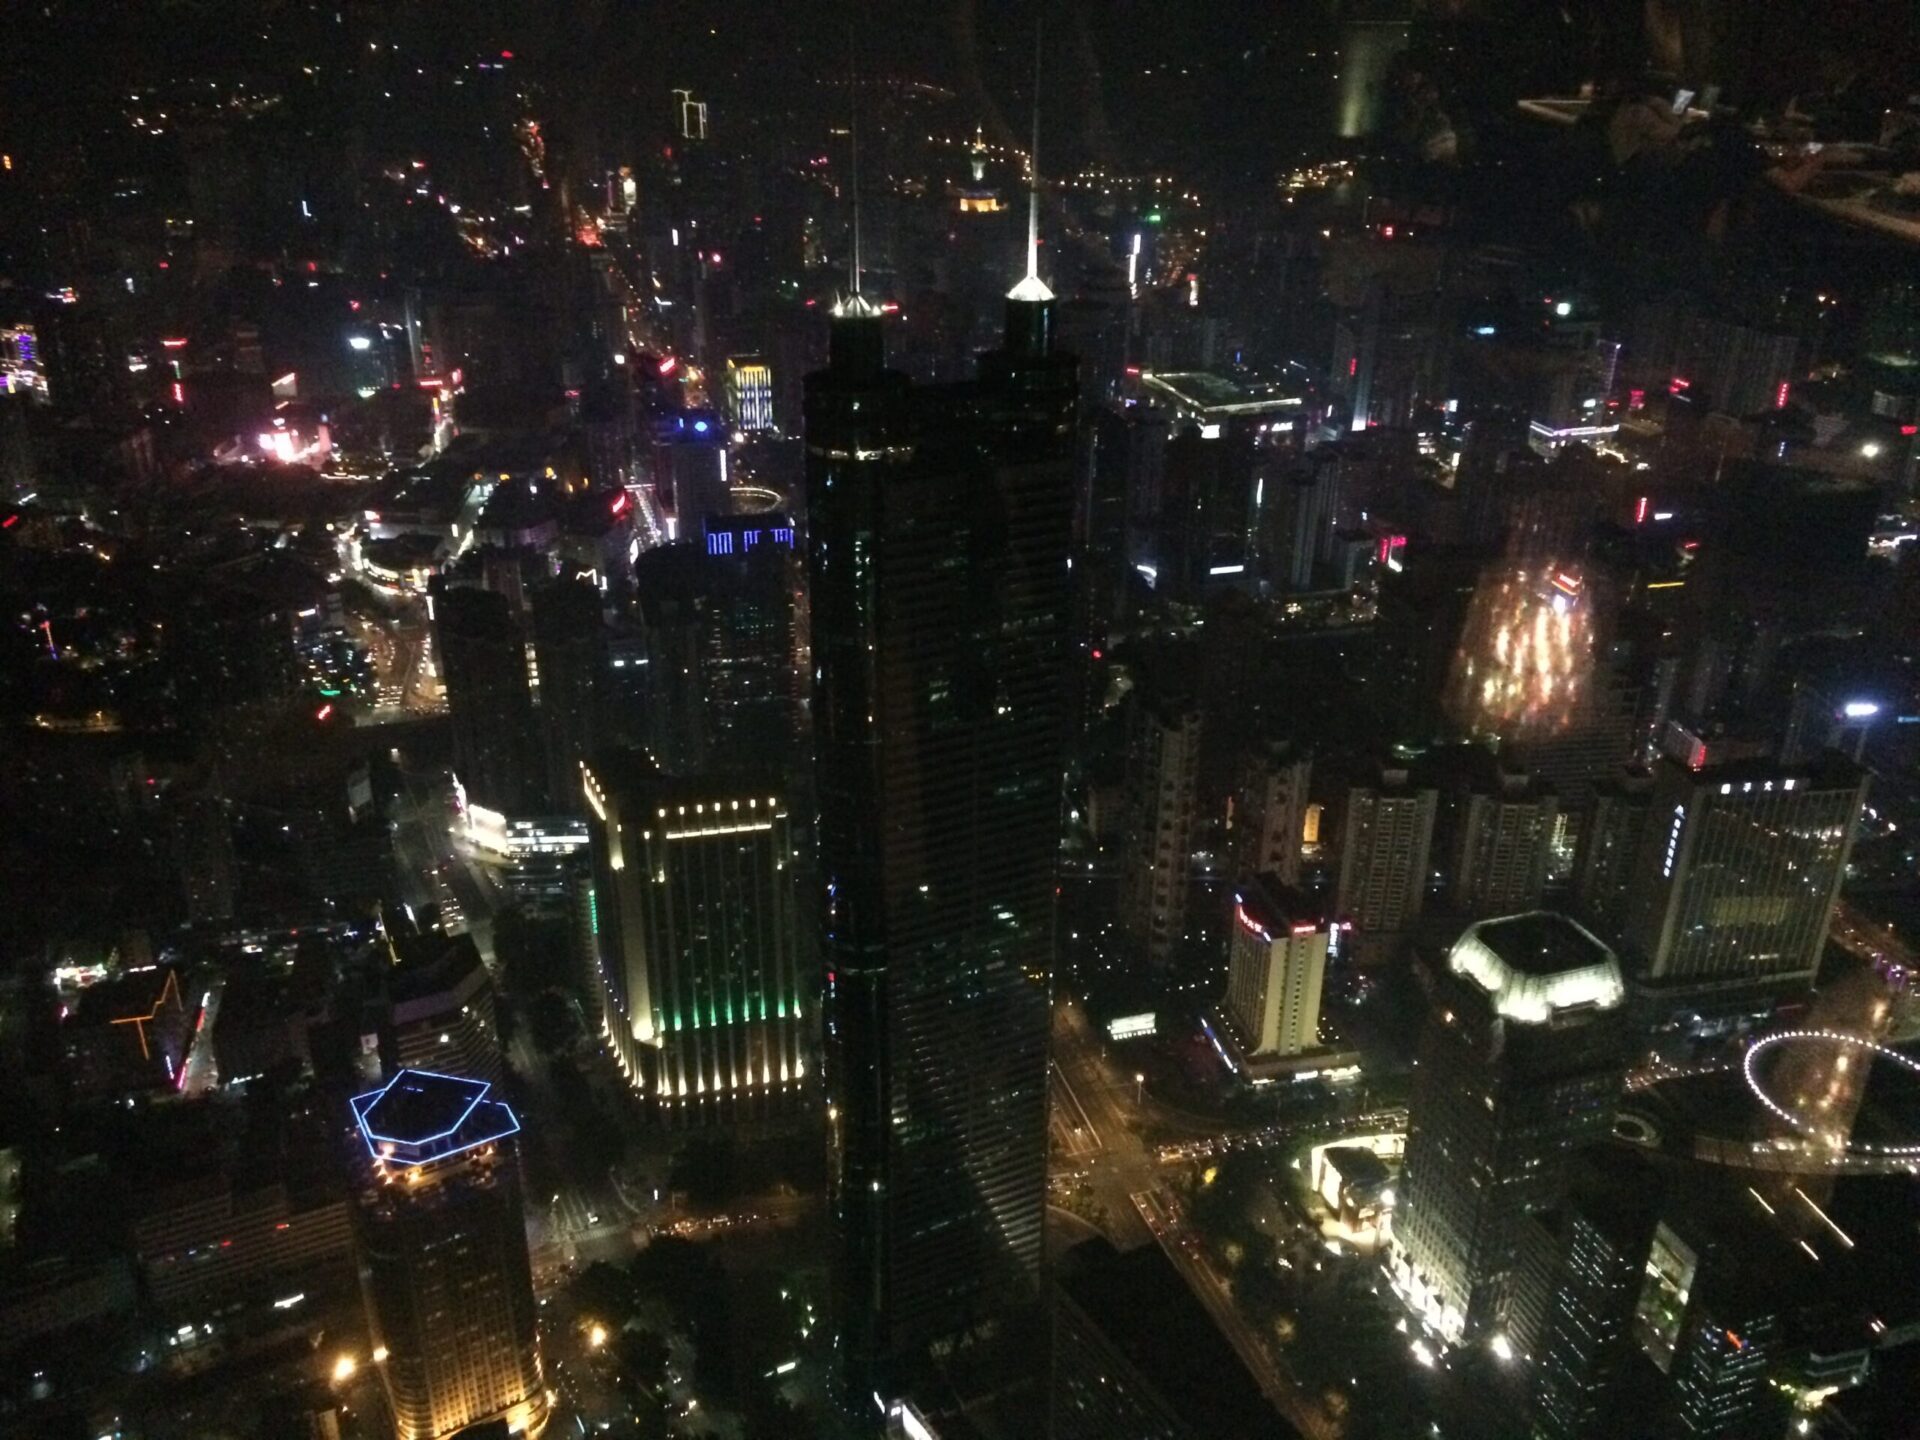 Shenzhen at night or Arkham city?